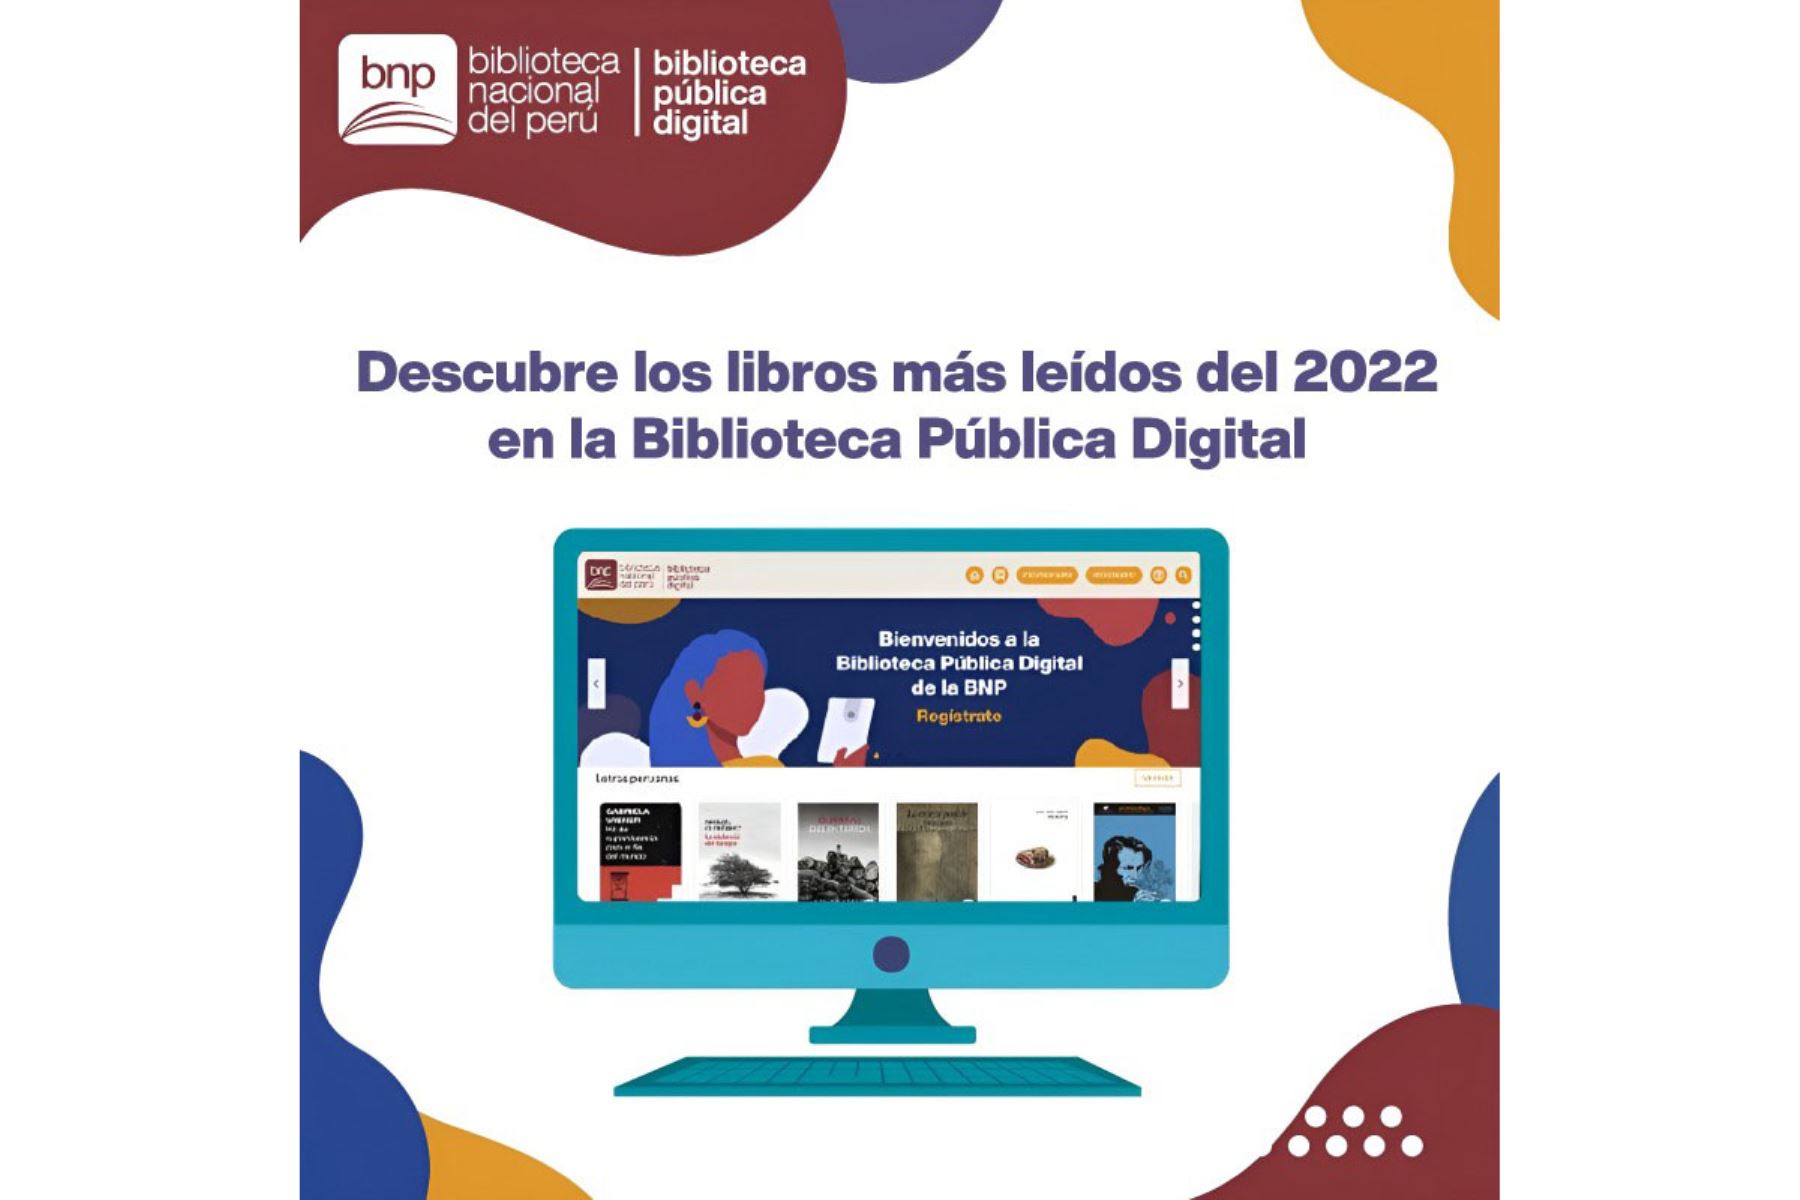 los libros más prestados de la Biblioteca Pública Digital en el 2022